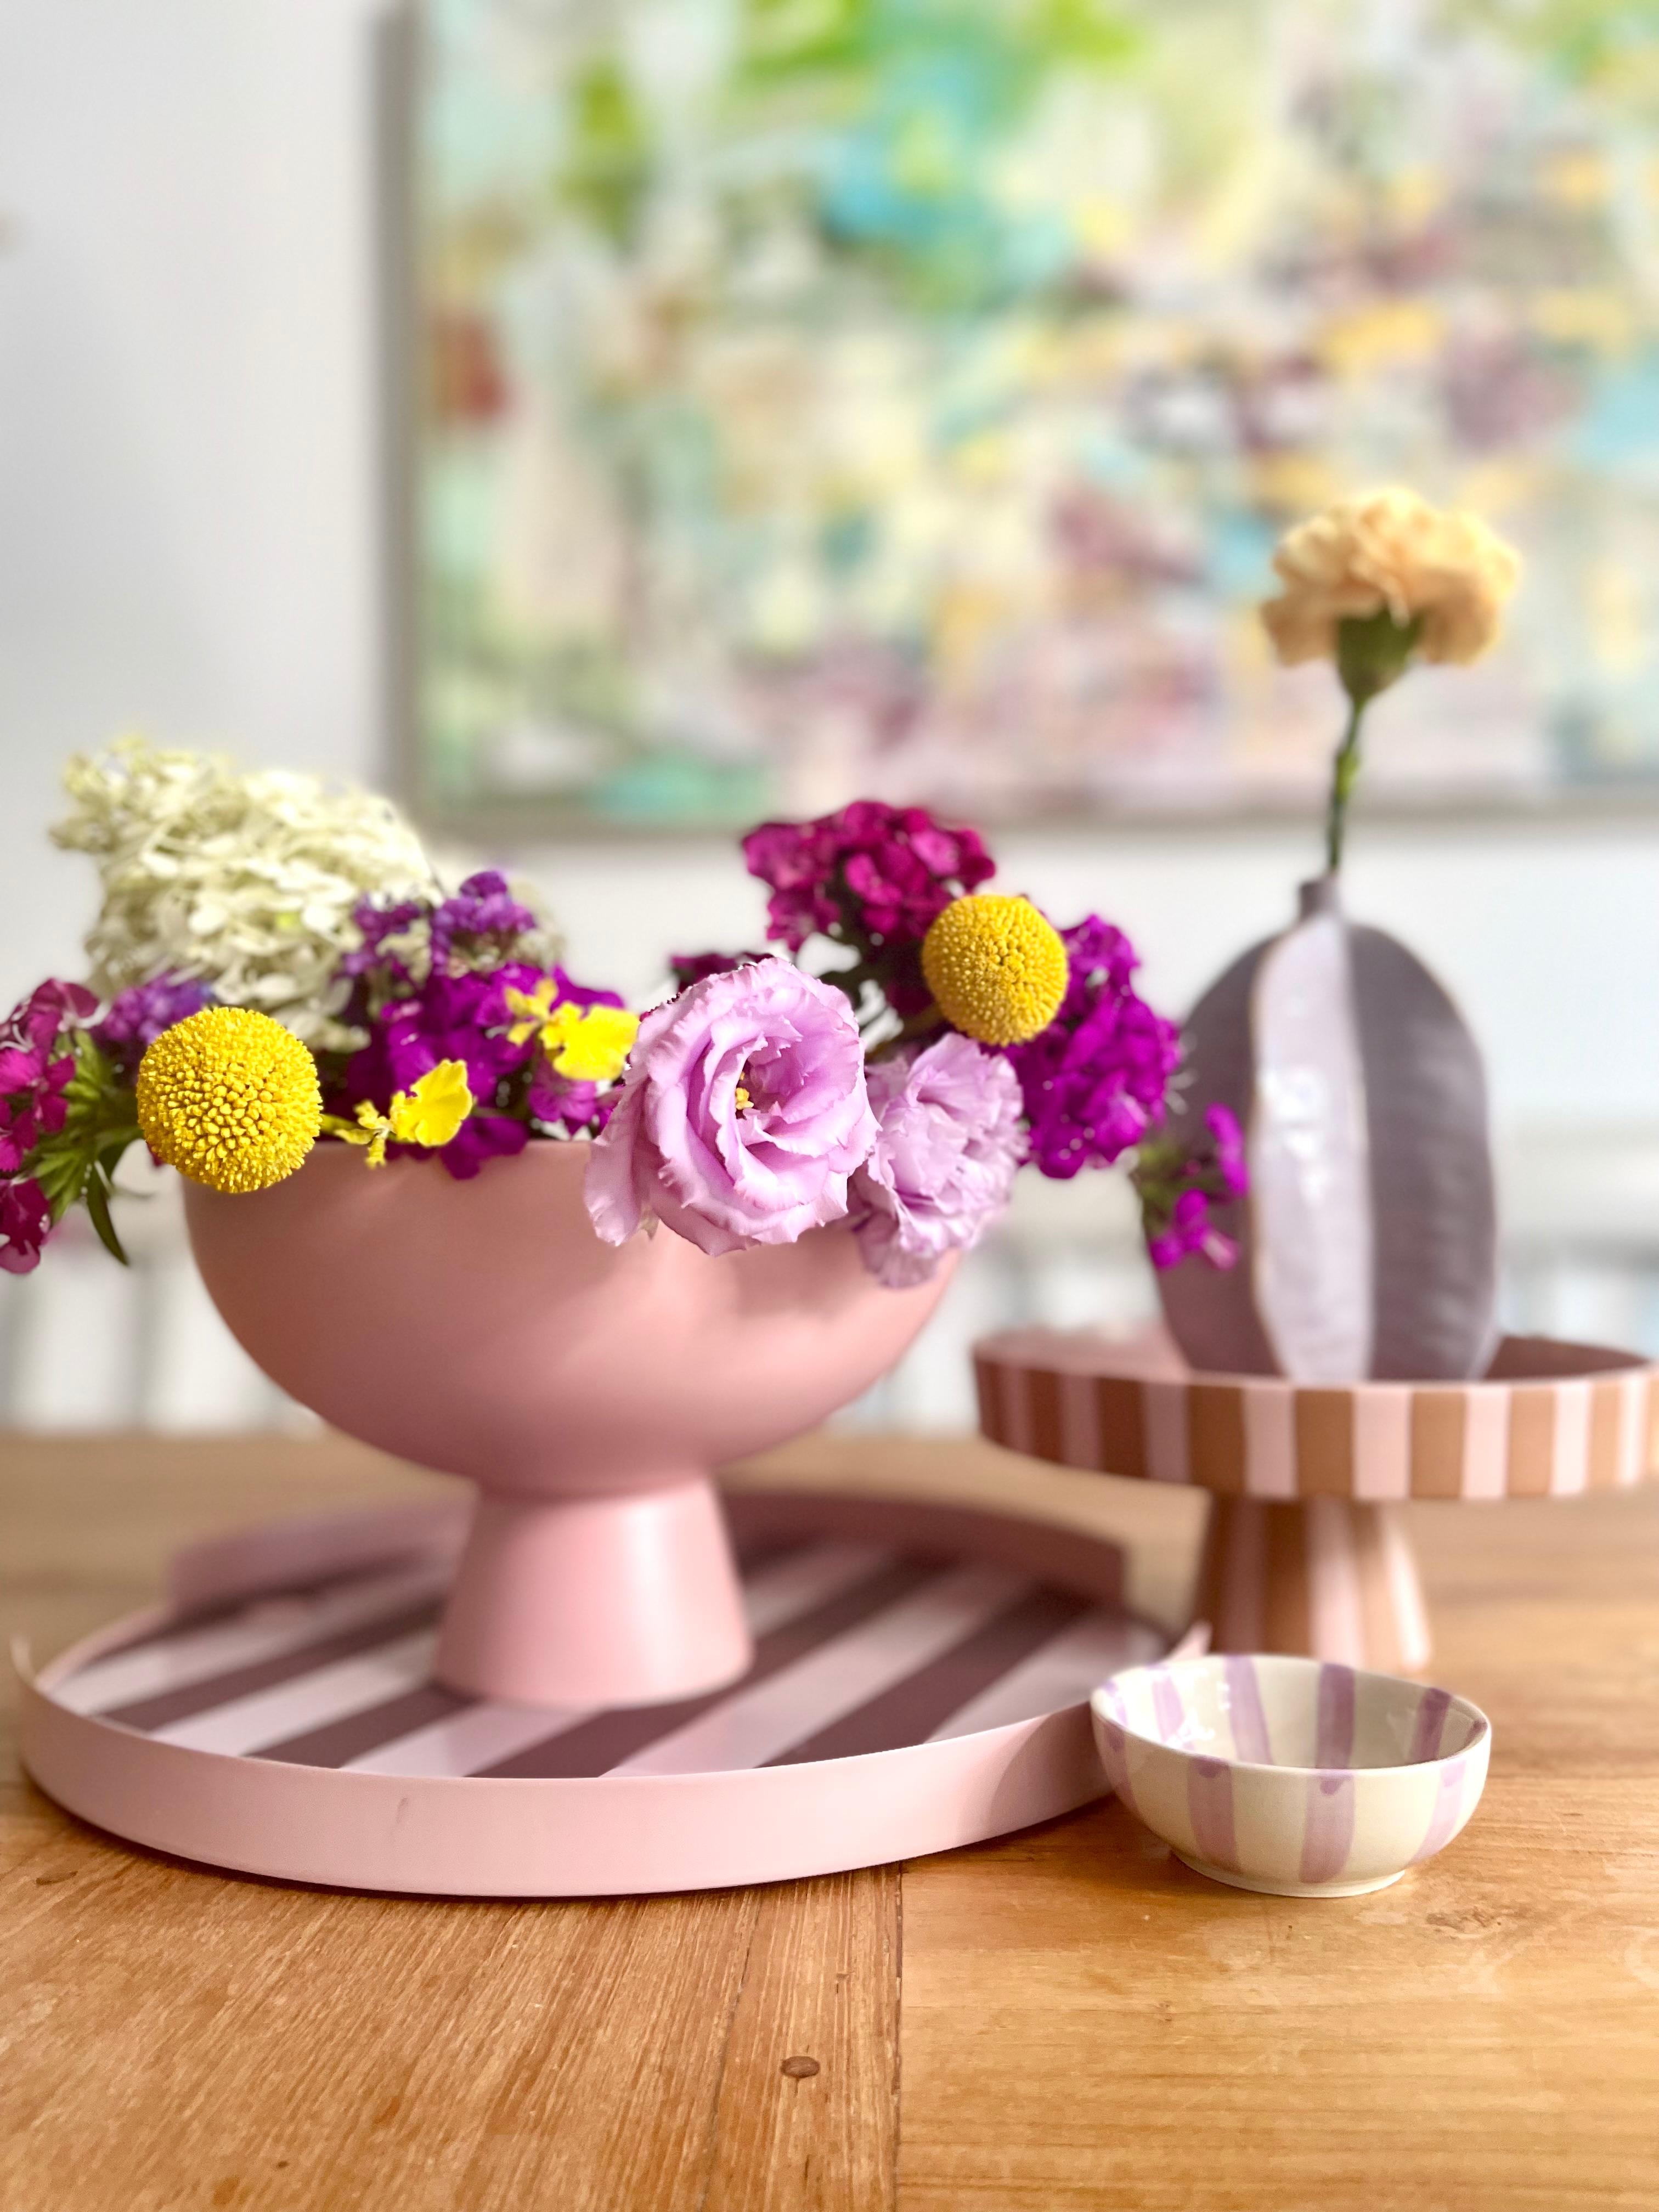 #flowerbowl #pinkbowl #vasenduo #vasenliebe #farbenfroh #cheers2colour #farbemachtglücklich #happyinterior #flowerpower